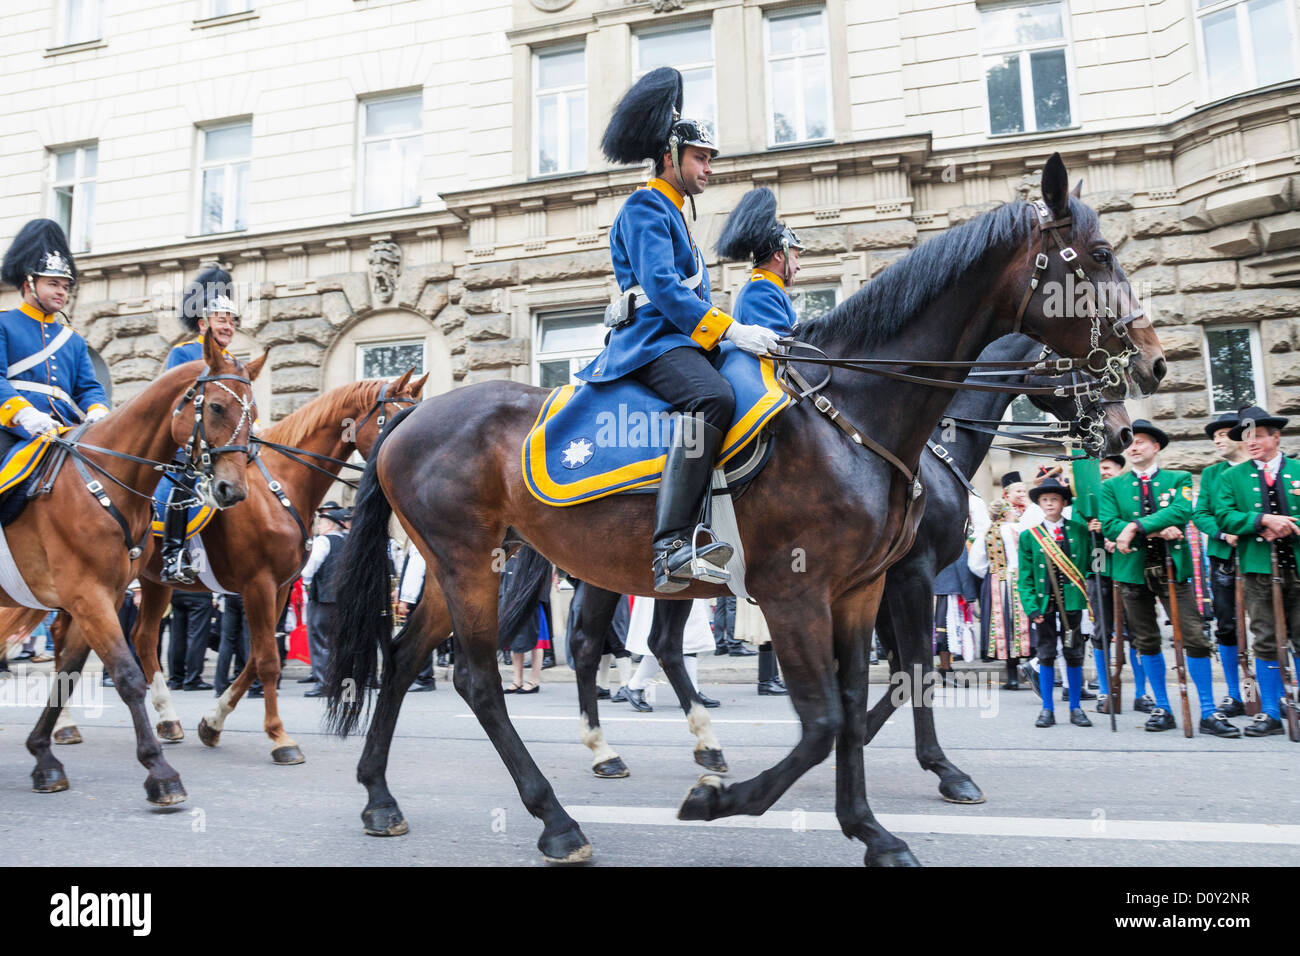 Deutschland, Bayern, München, Oktoberfest, Oktoberfest-Parade, Leute gekleidet in historischen Kostümen auf dem Pferderücken Stockfoto